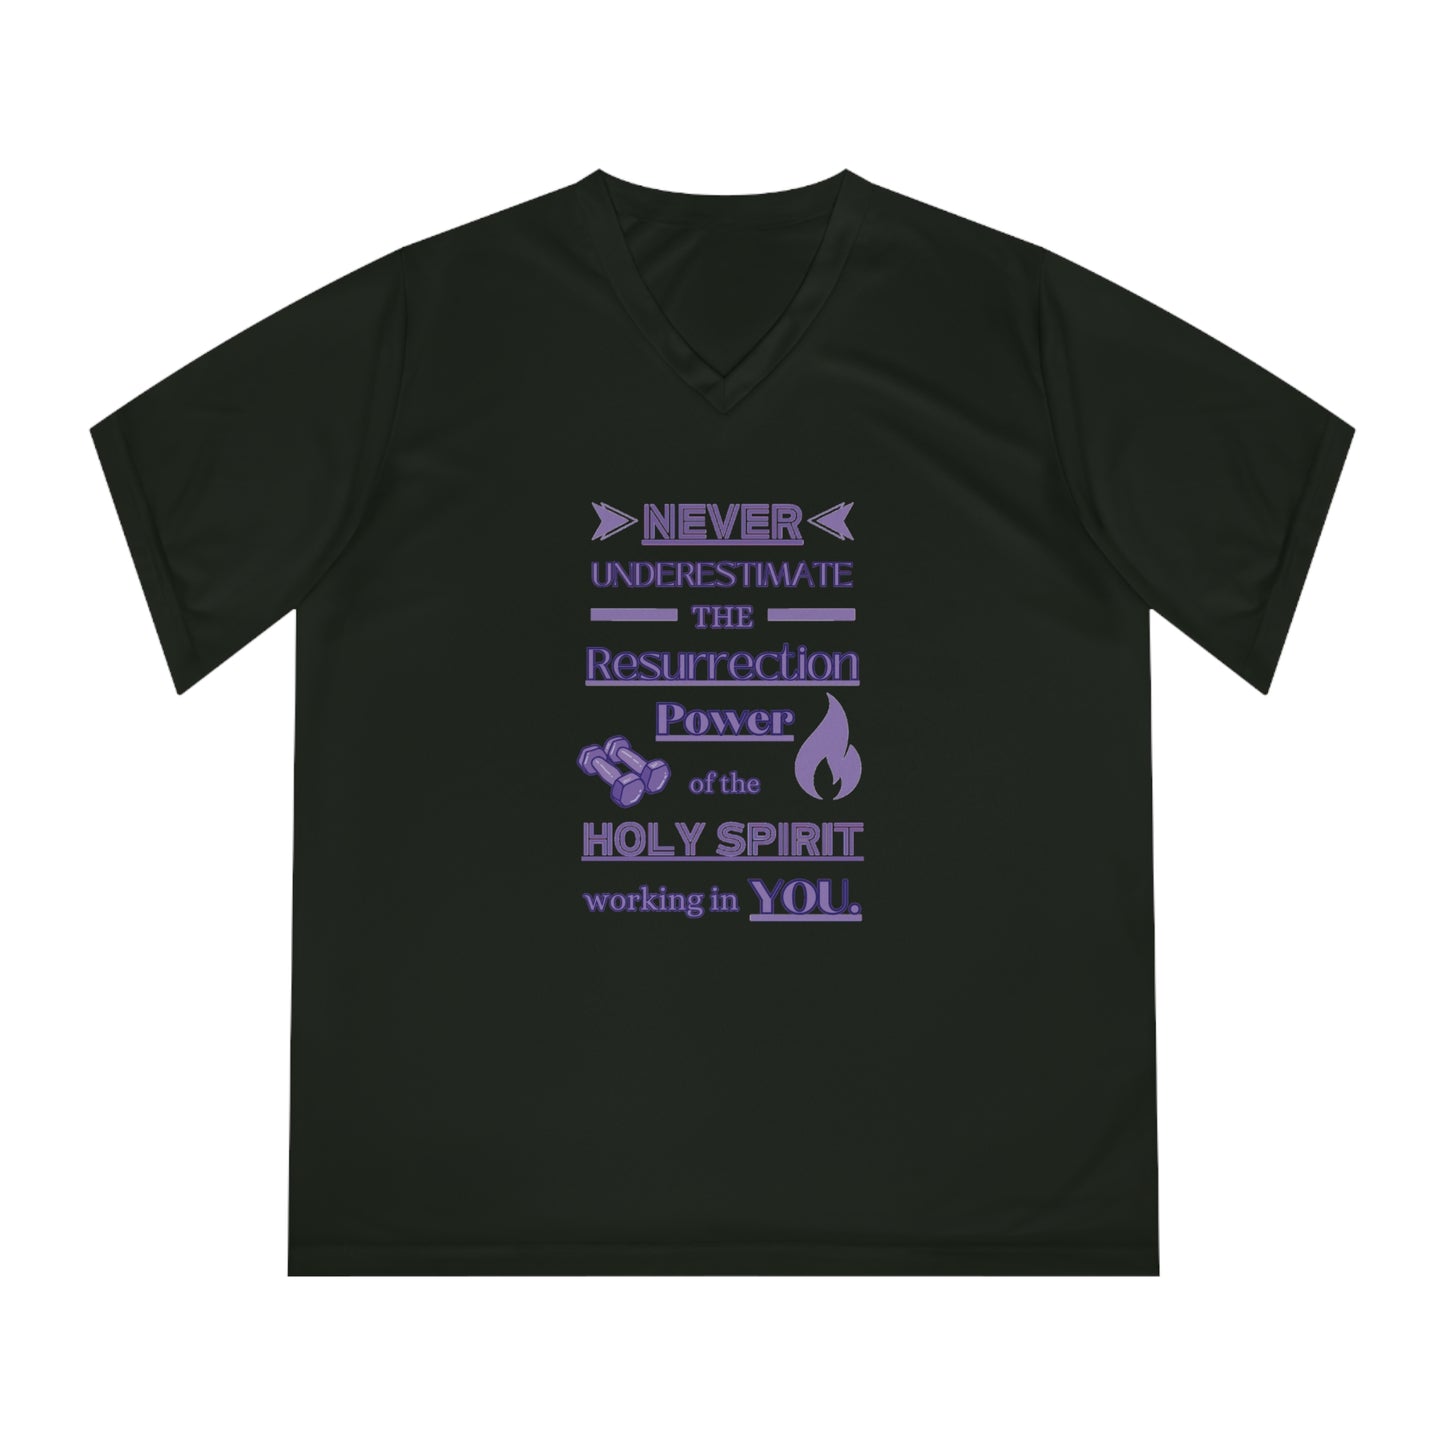 Women's Performance V-Neck T-Shirt - Resurrection Power!